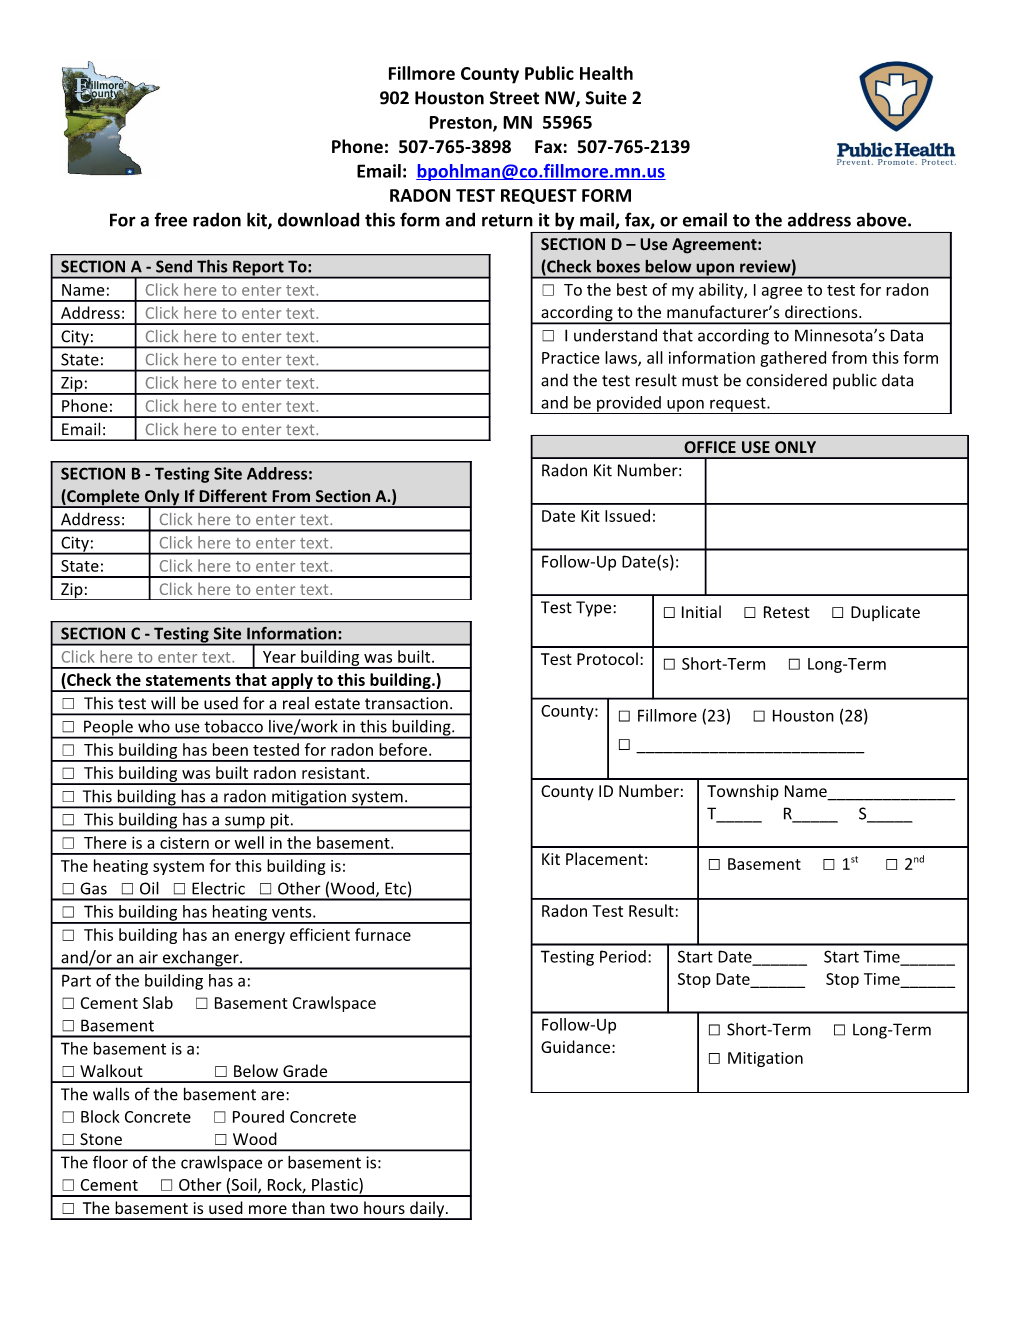 Radon Test Request Form